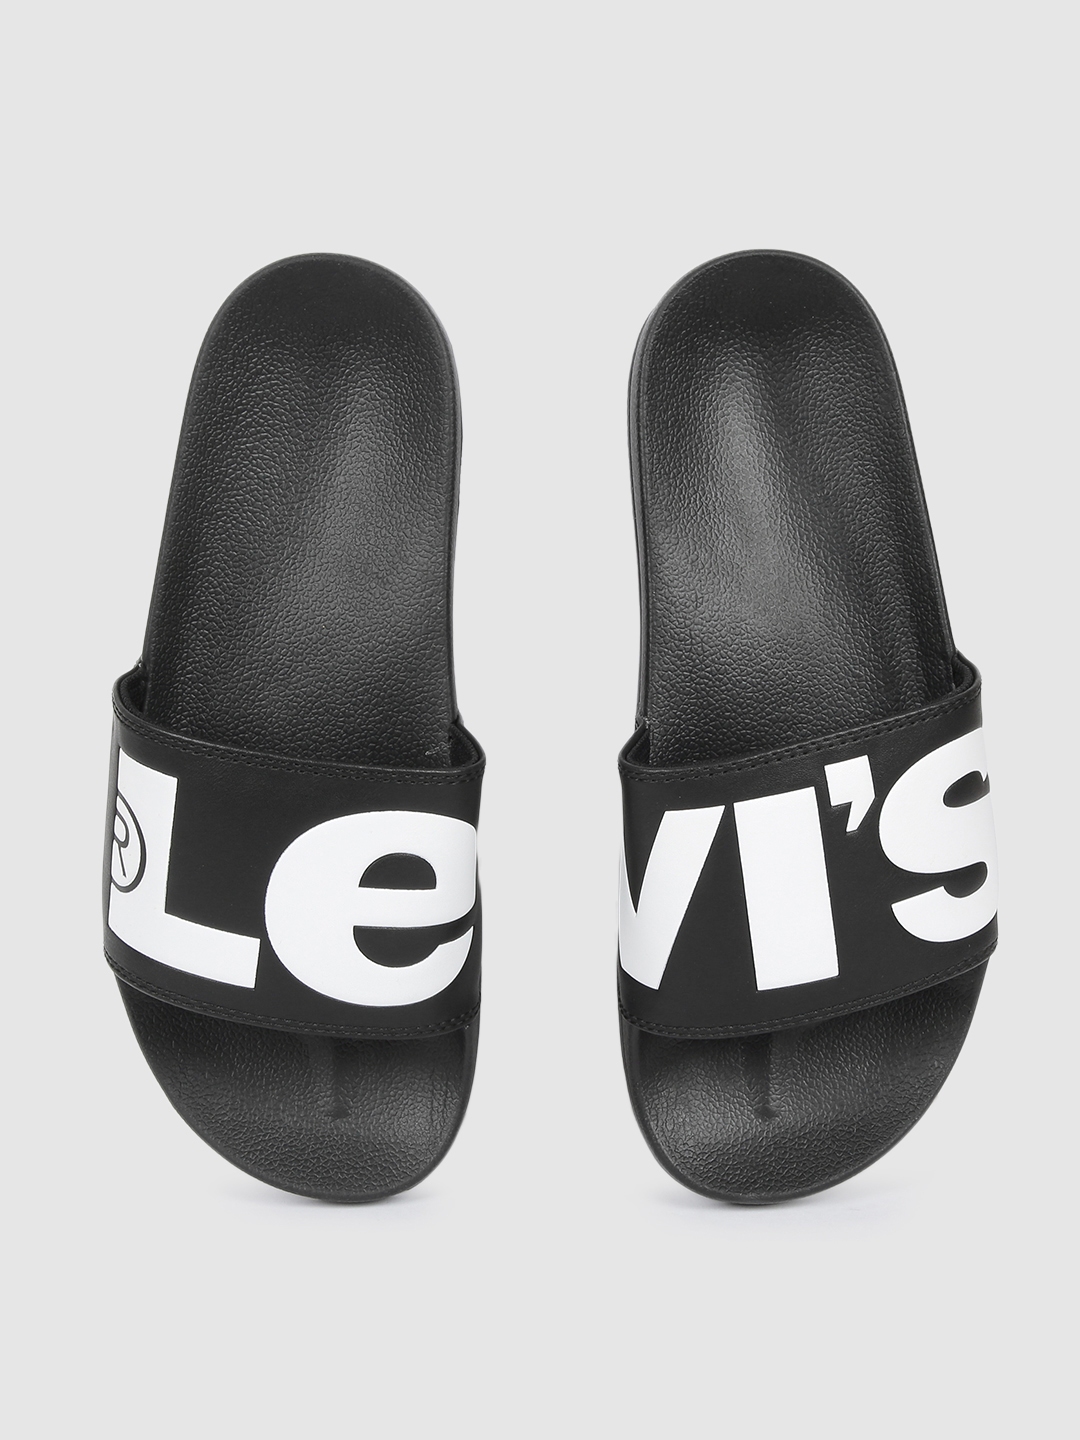 Buy Levis Men Black & White Printed Sliders - Flip Flops for Men 11368800 |  Myntra